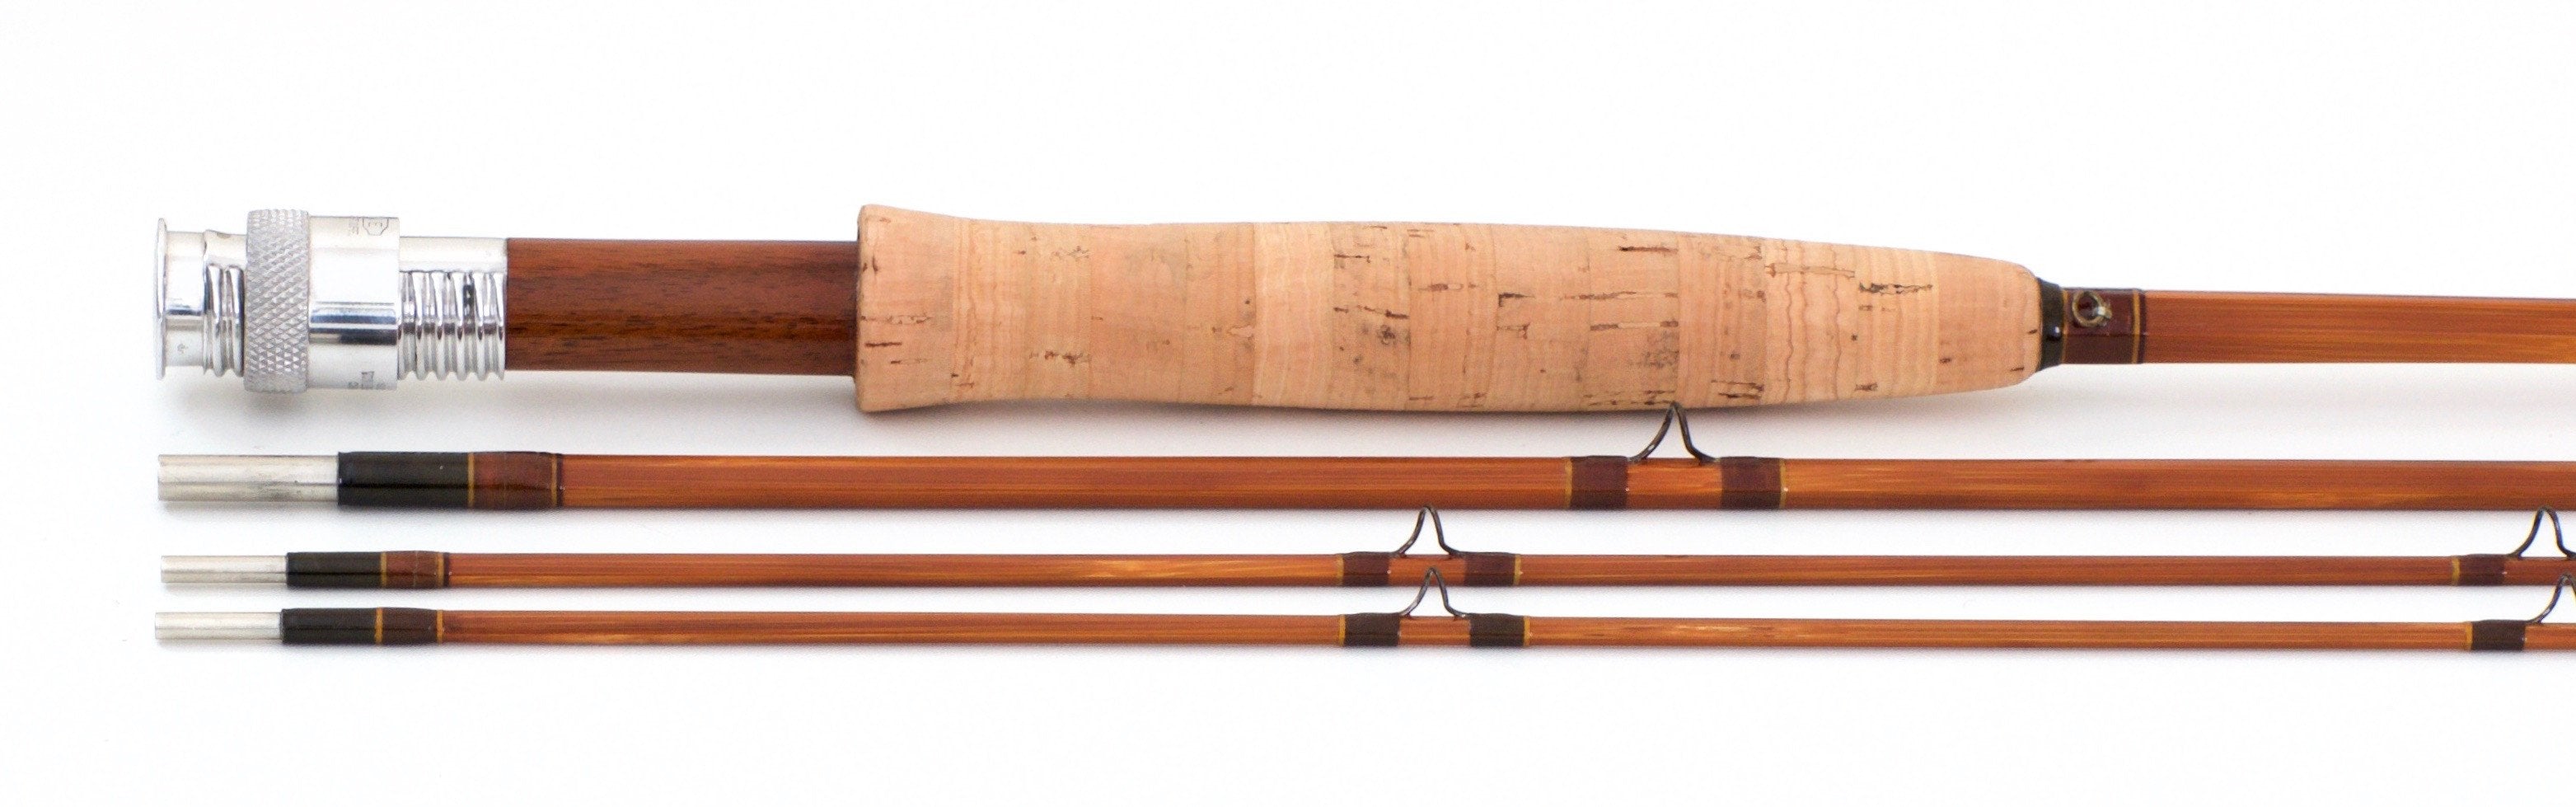 Payne Model 200 Bamboo Rod 8' 3/2 #4/5 - Spinoza Rod Company